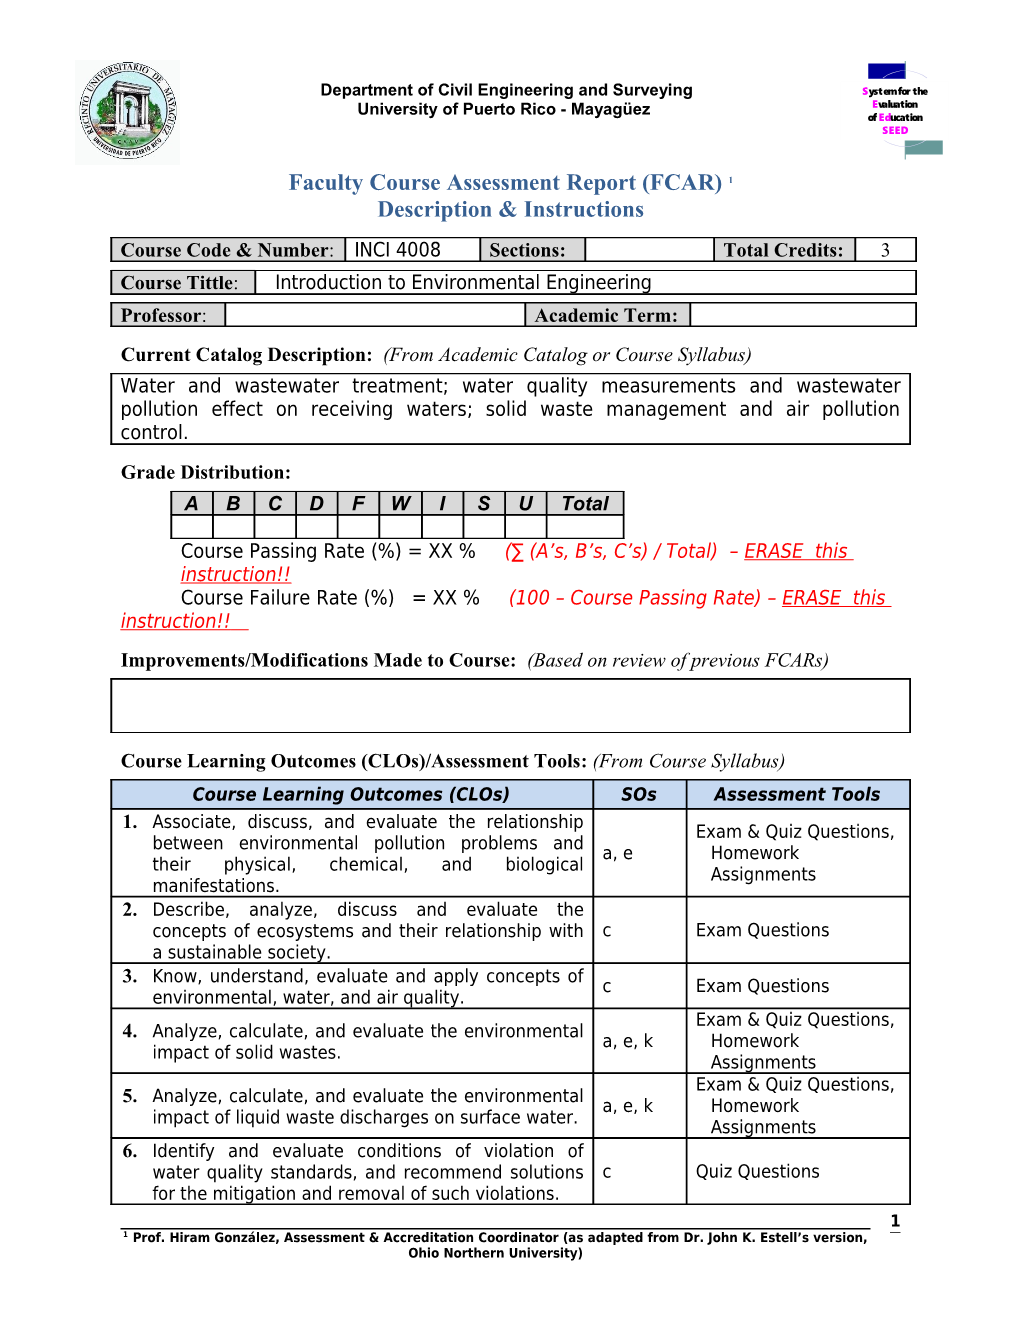 Faculty Course Assessment Report (FCAR) Description & Instructions 1